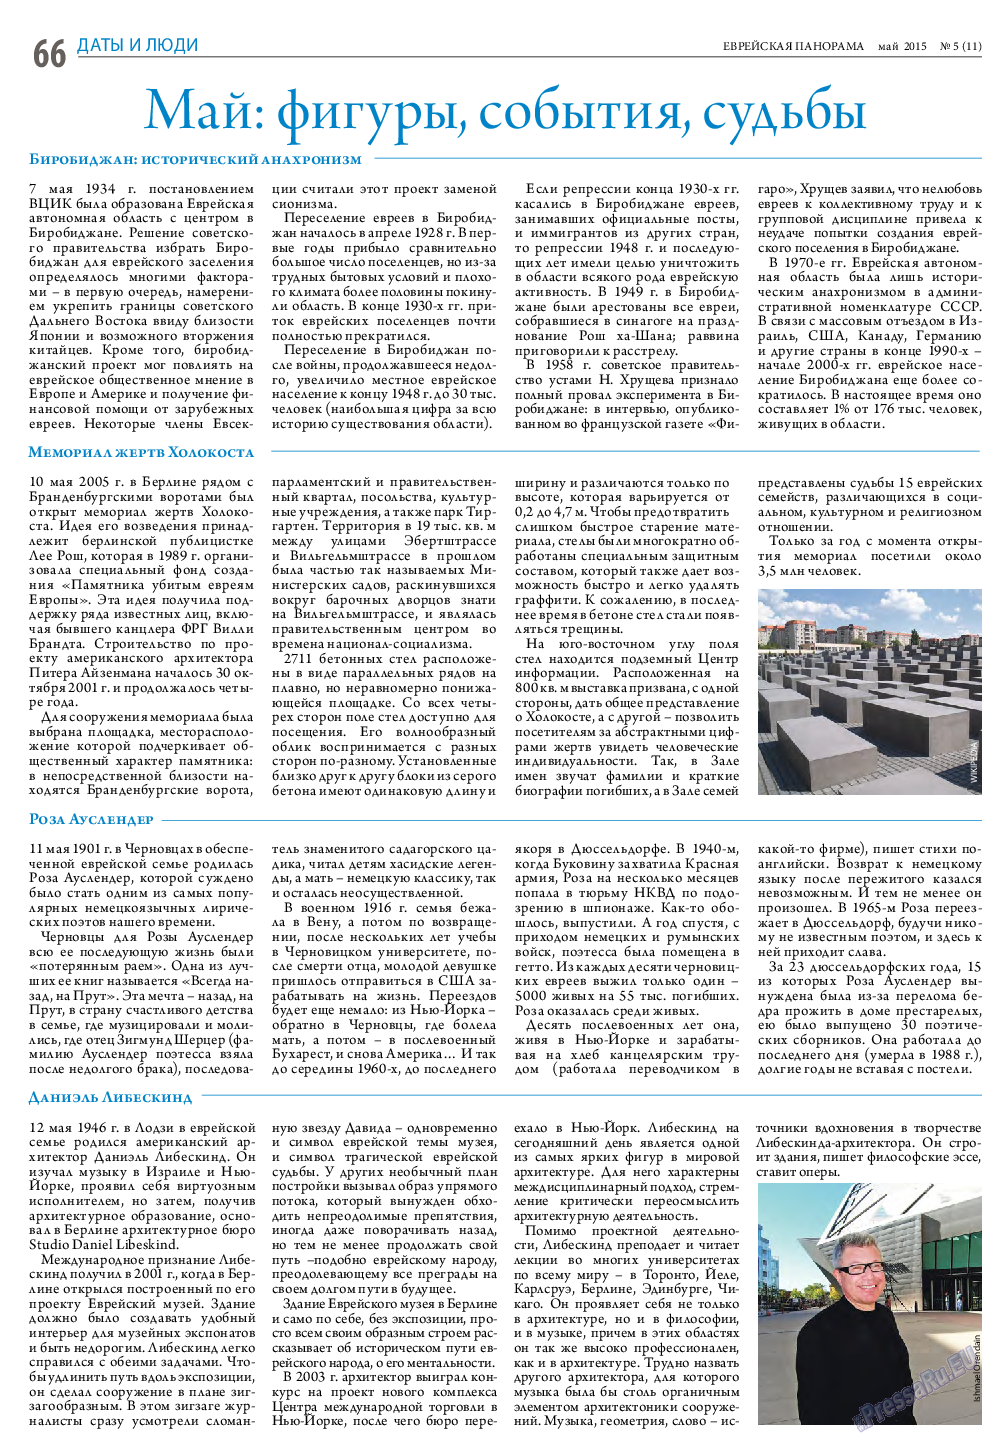 Еврейская панорама (газета). 2015 год, номер 5, стр. 66